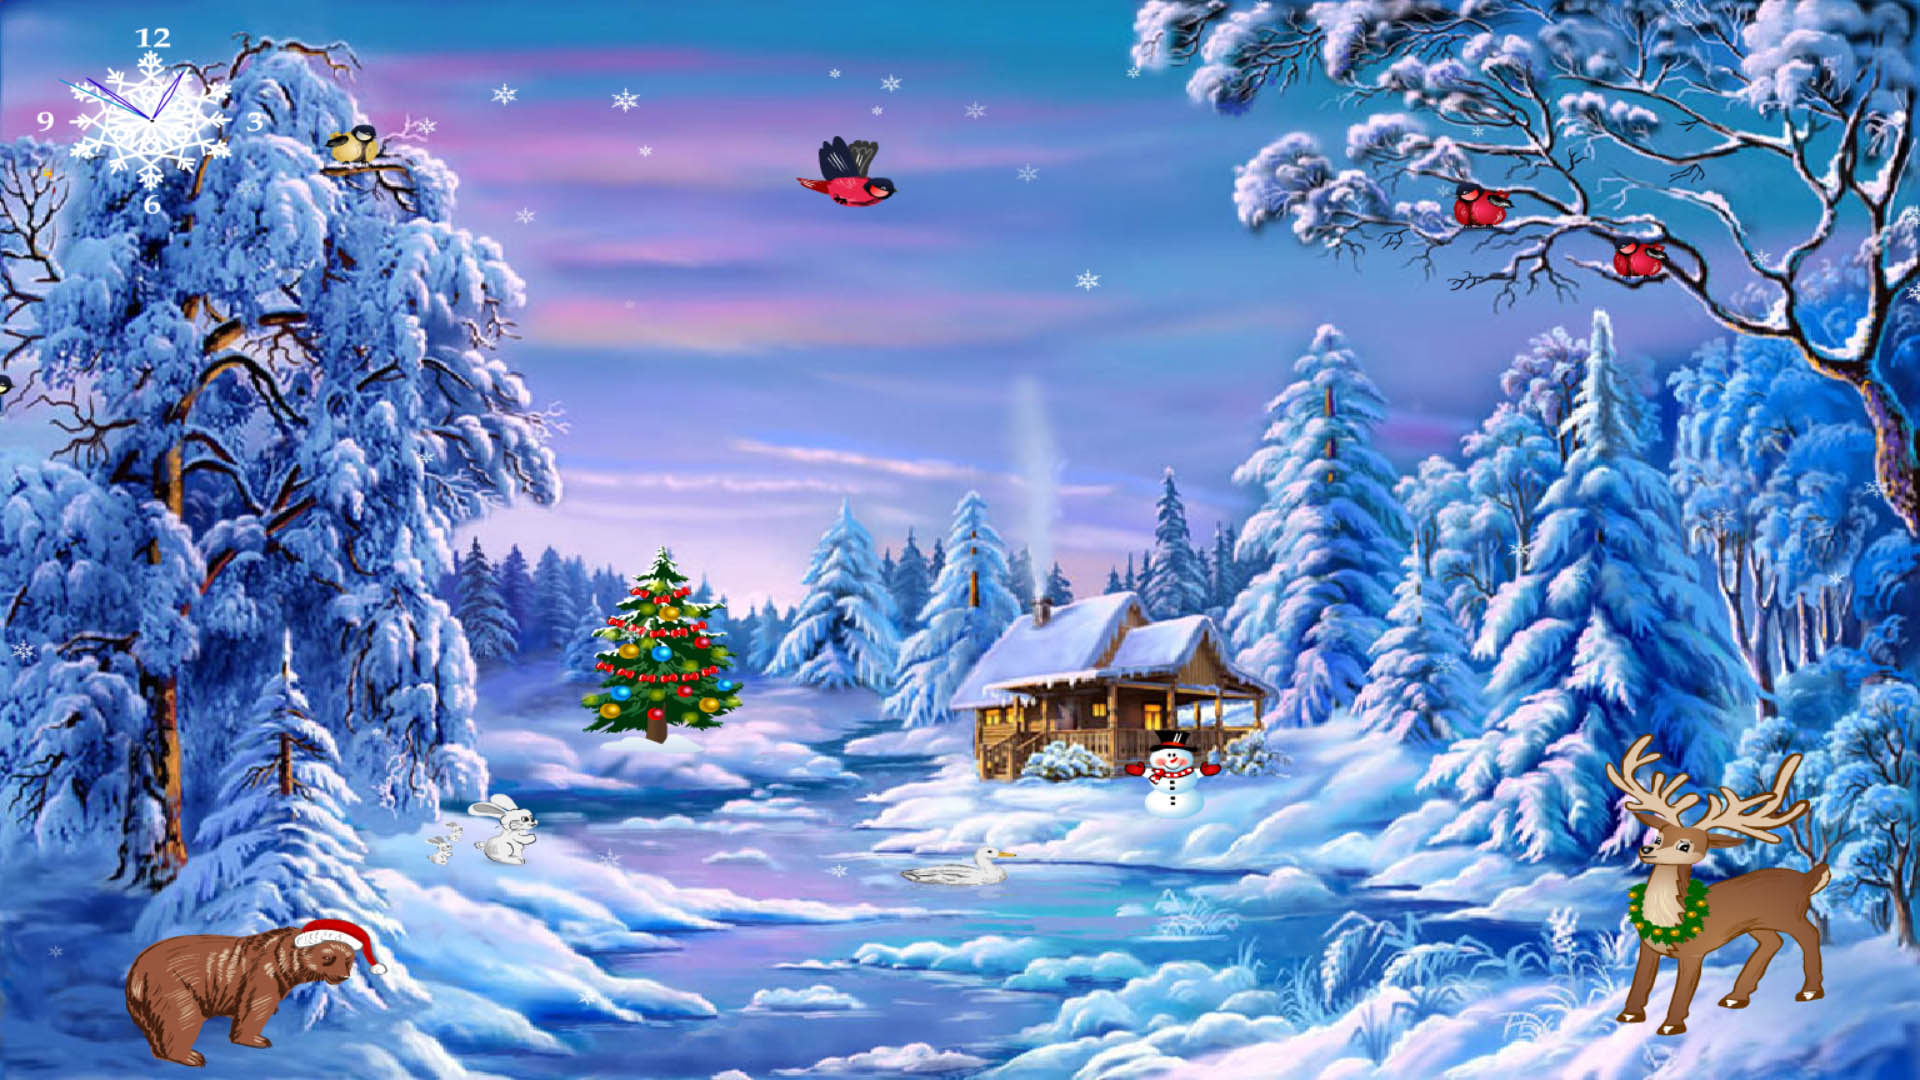 Free Christmas Screensaver for Windows 10 - Christmas Symphony ...